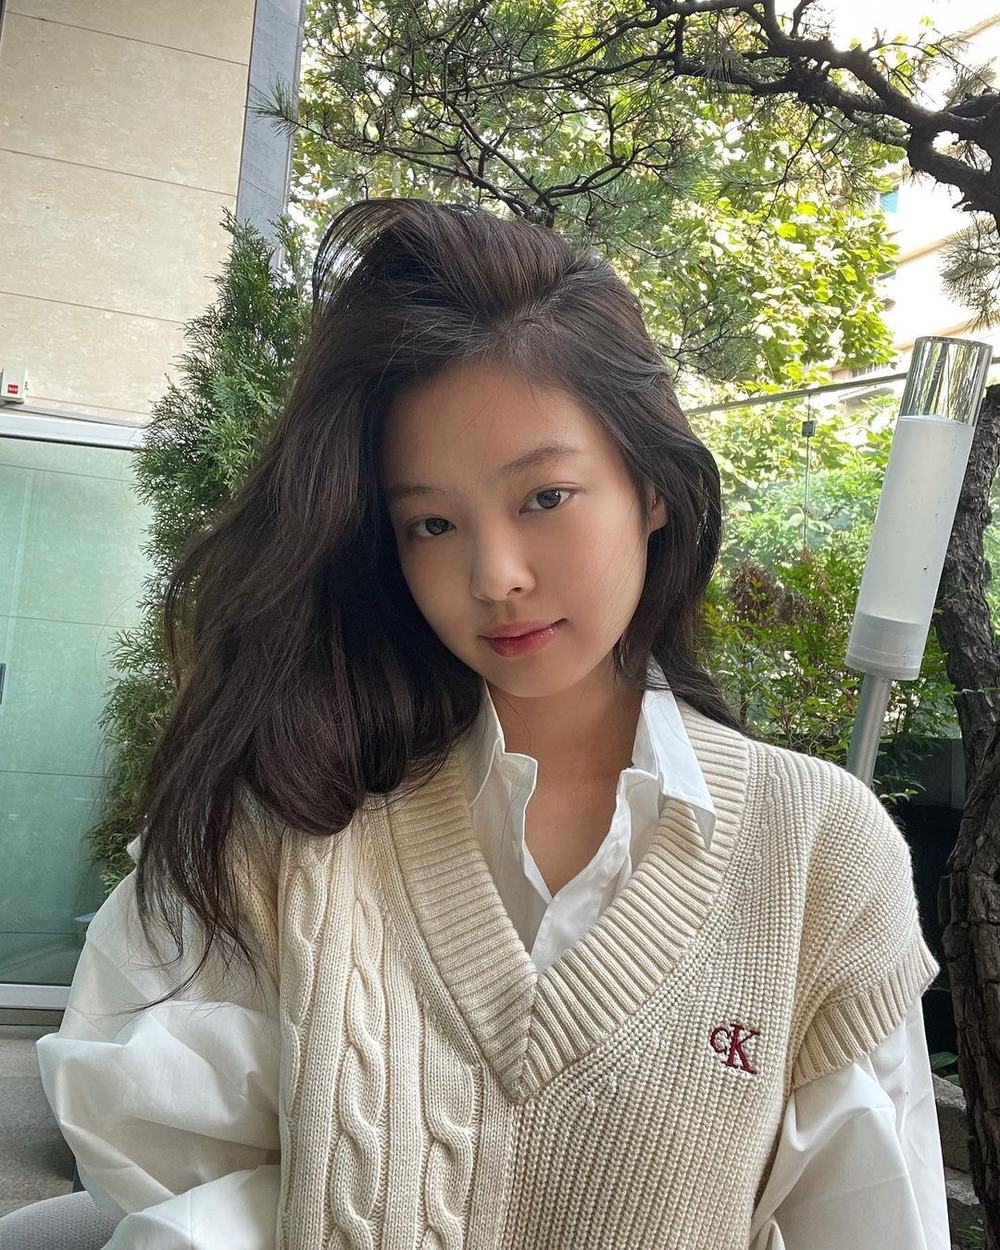 Jennie nổi tiếng là một trong những nữ thần tượng hot nhất hiện nay. Những bức ảnh của cô luôn thu hút sự chú ý của fan hâm mộ bởi ngoại hình và phong cách đậm chất Hàn Quốc. Hãy cùng chiêm ngưỡng nét đẹp quyến rũ của Jennie.